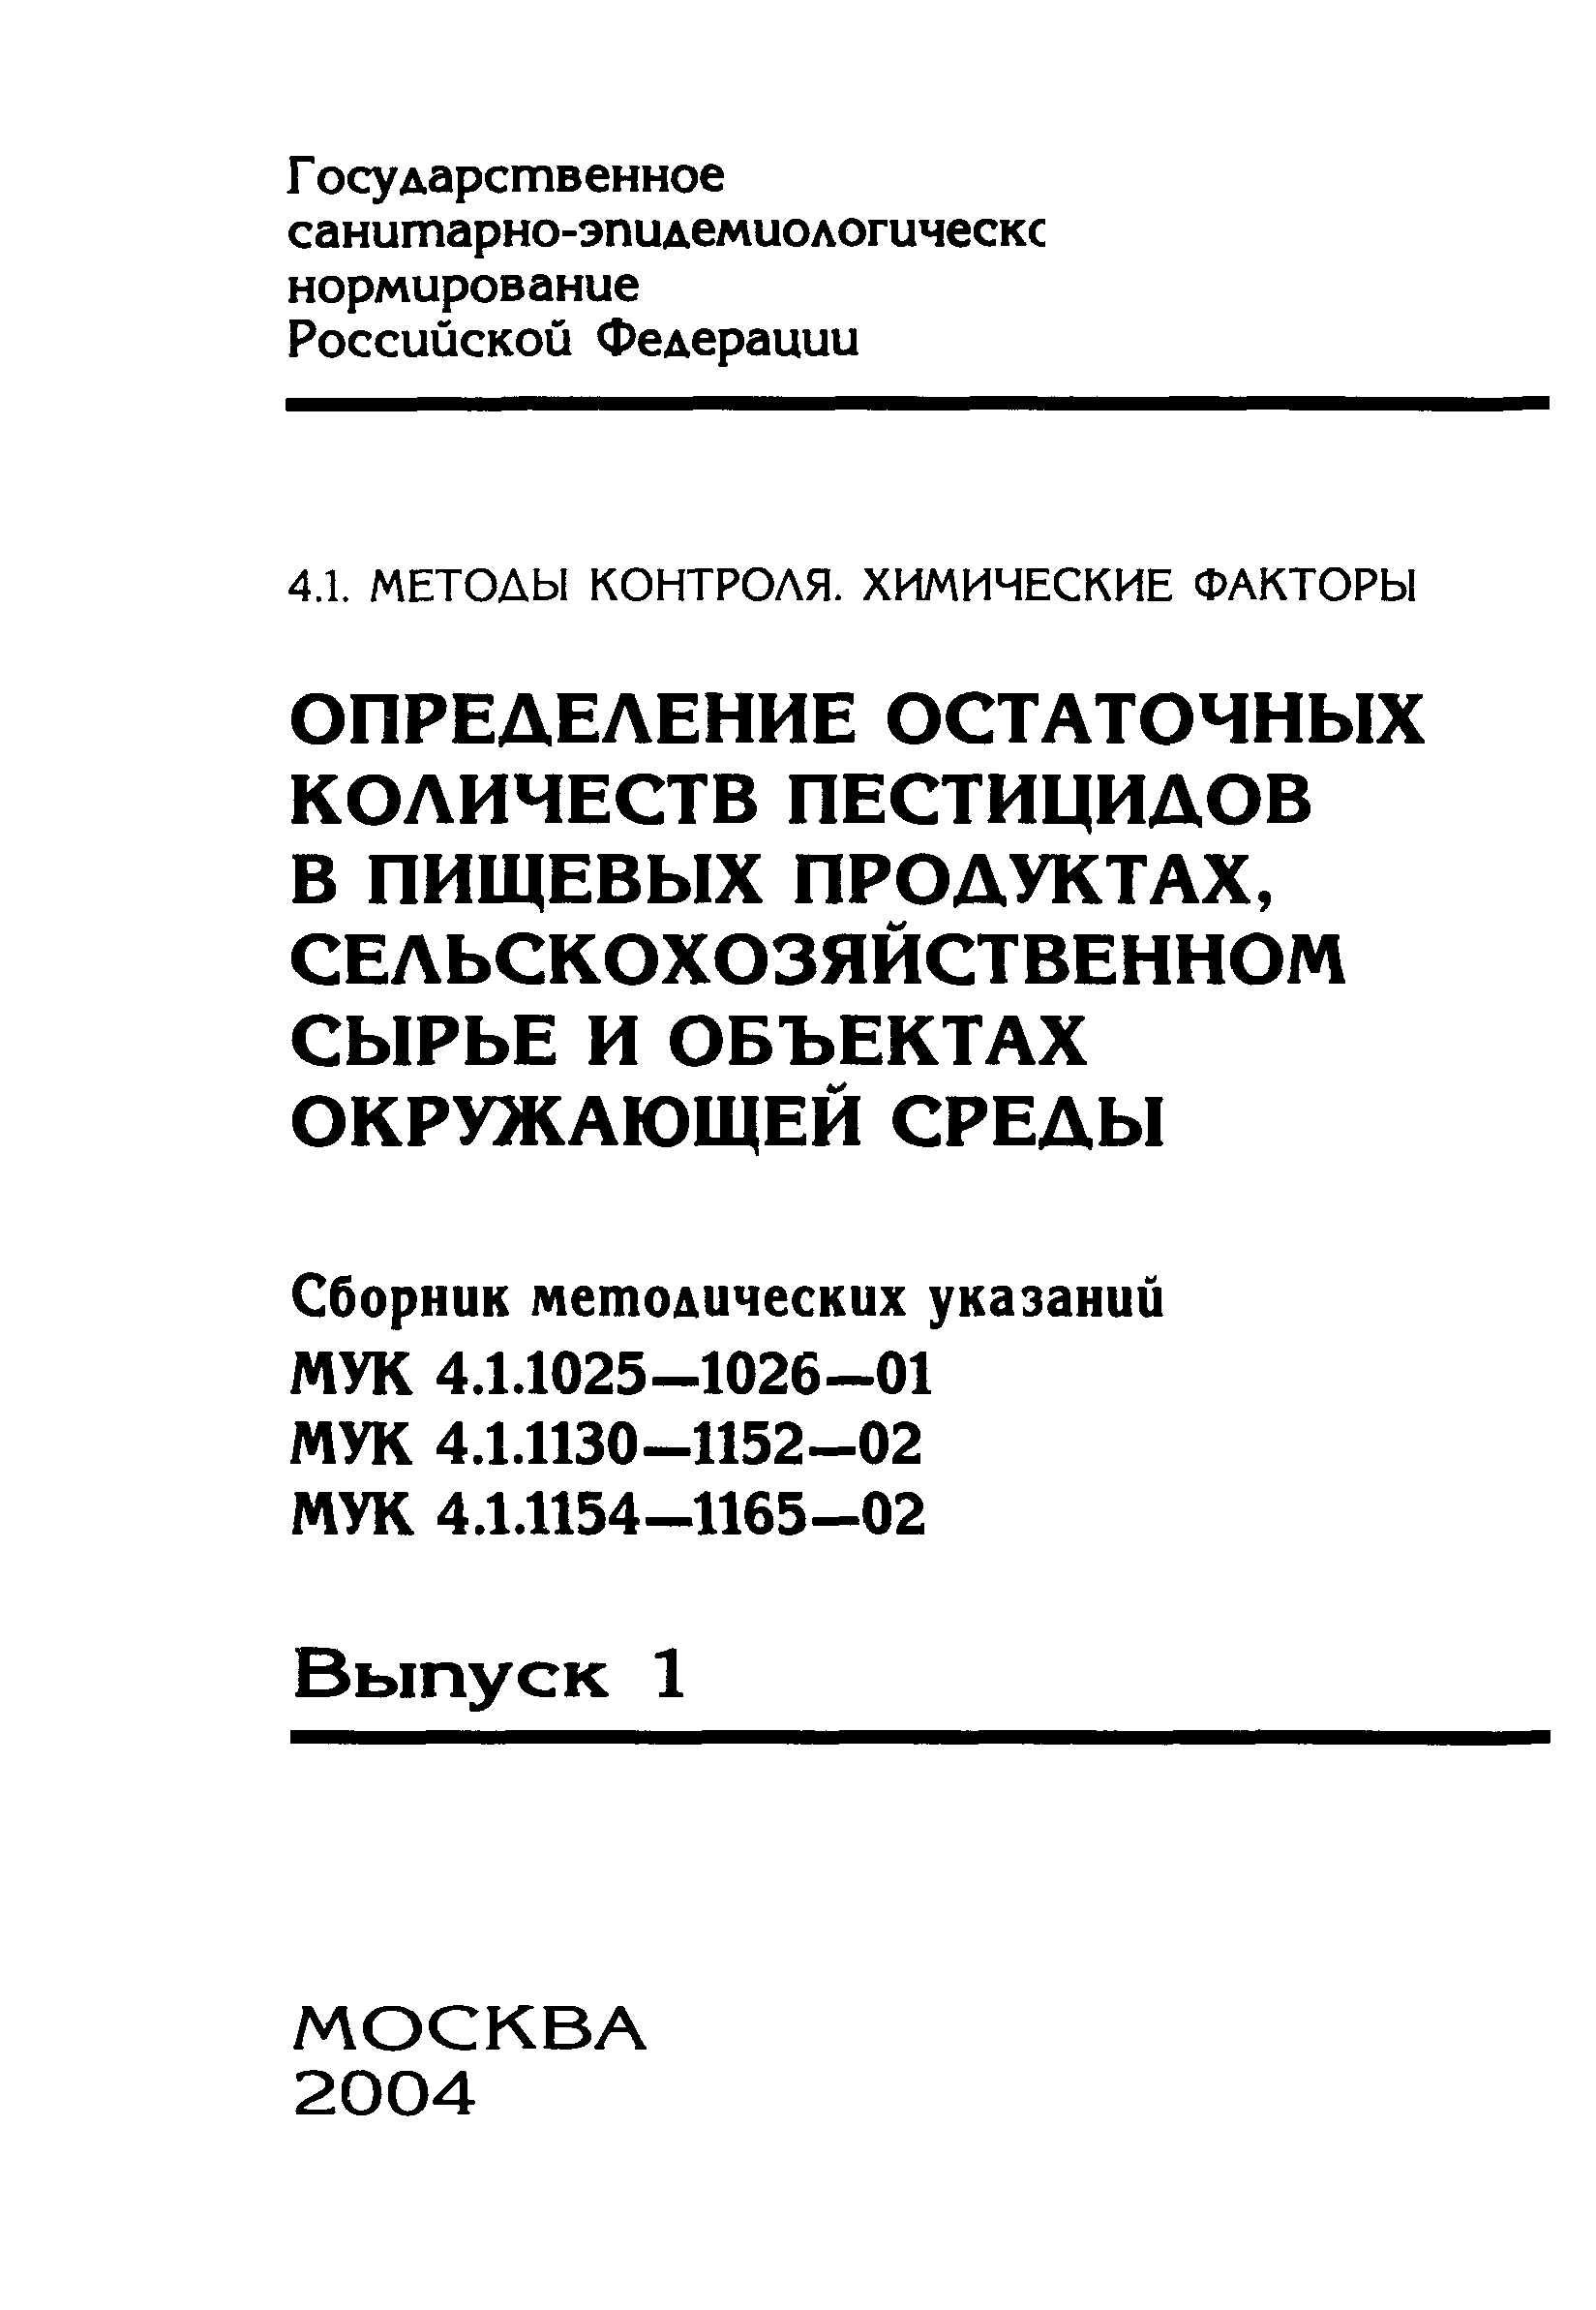 МУК 4.1.1160-02